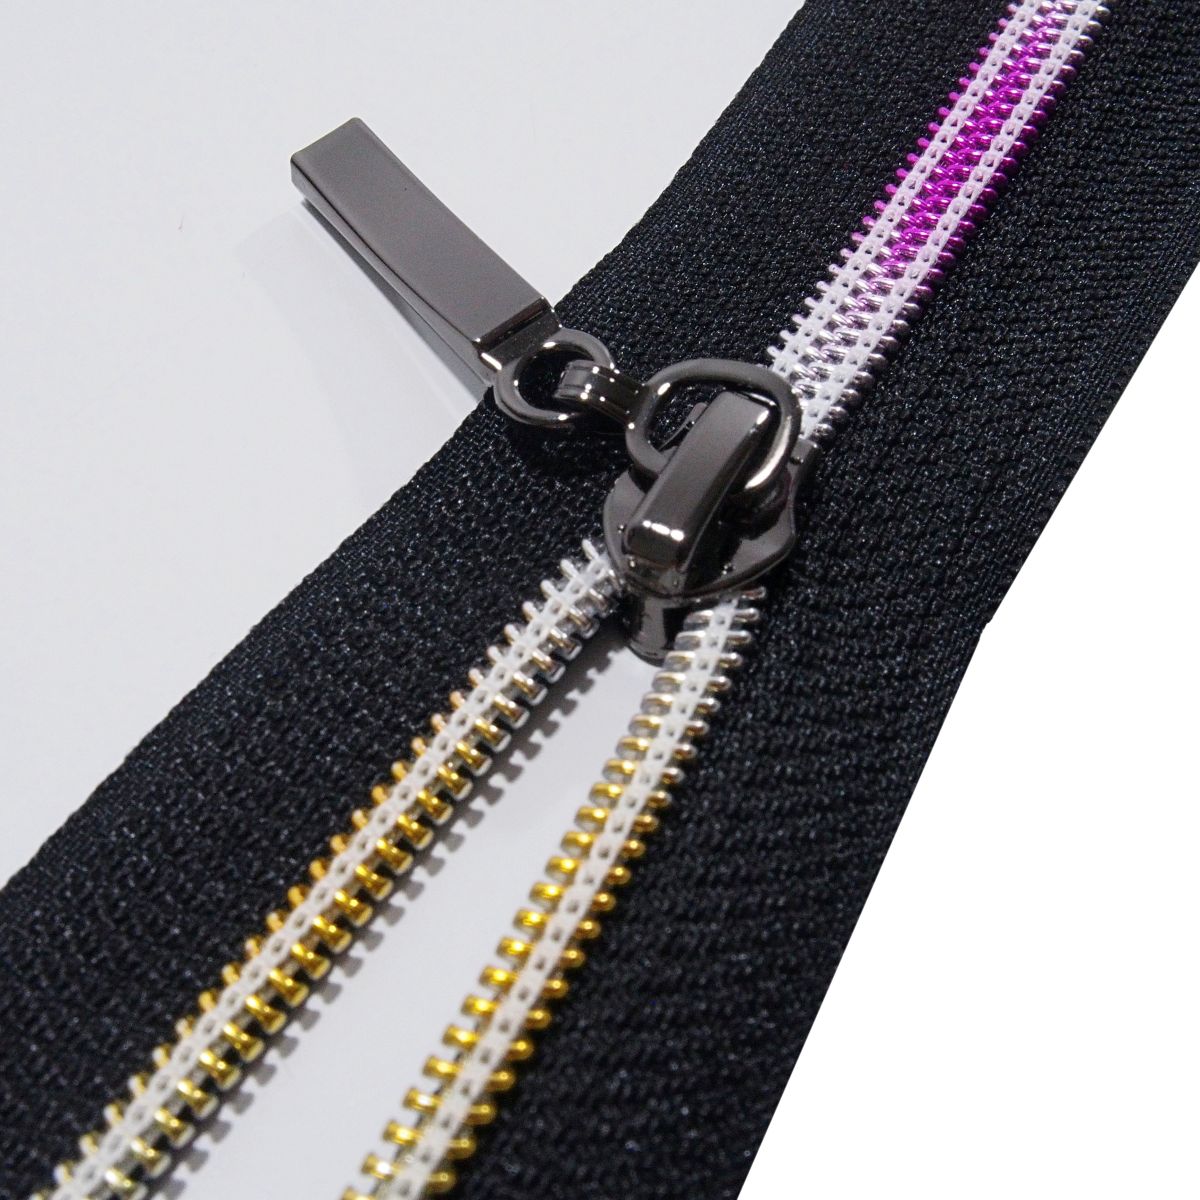 Roban Fashion 5m Endlos Reißverschluss Spirale 5mm mit 10 Zipper Meterware in 24 Farben,5m+10Zipper,Rot 